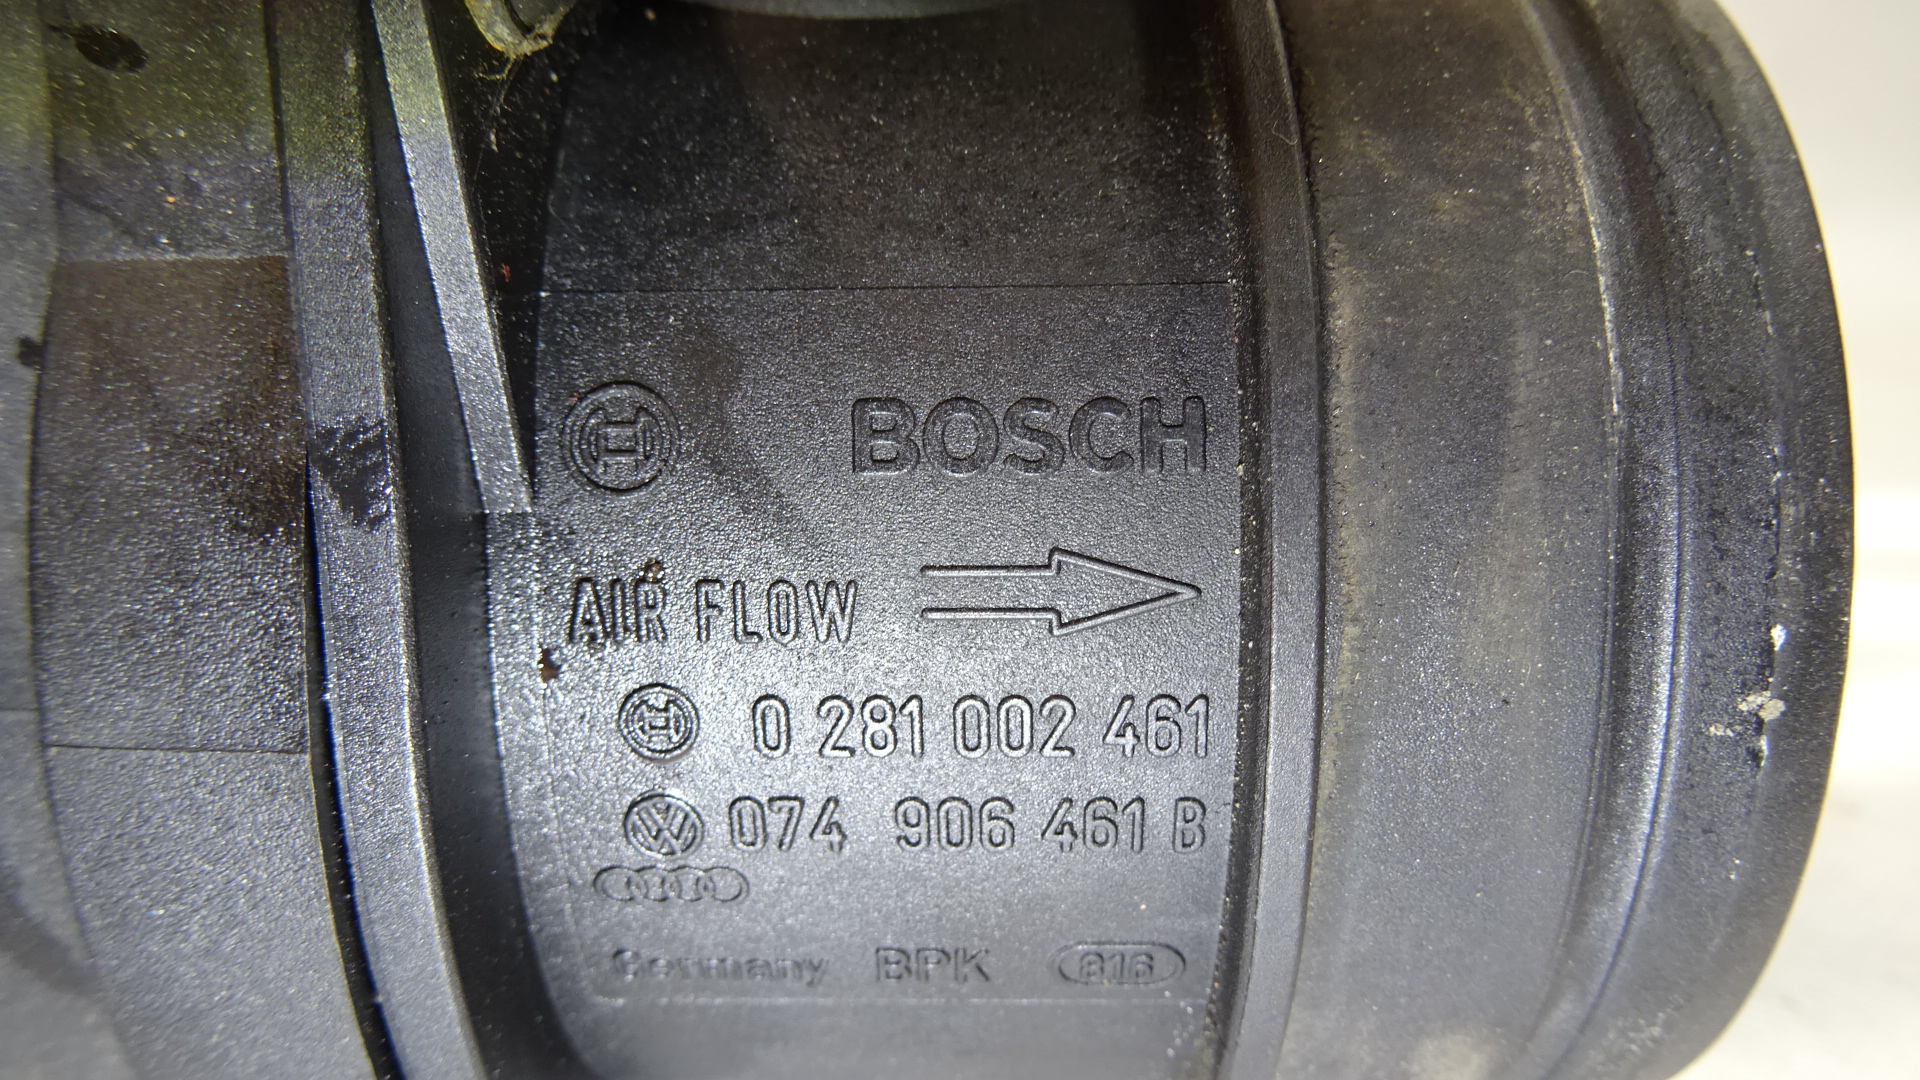 Luftmassenmesser VW Touareg 7L BJ:2004 VW 074906461B, Bosch 0281002461